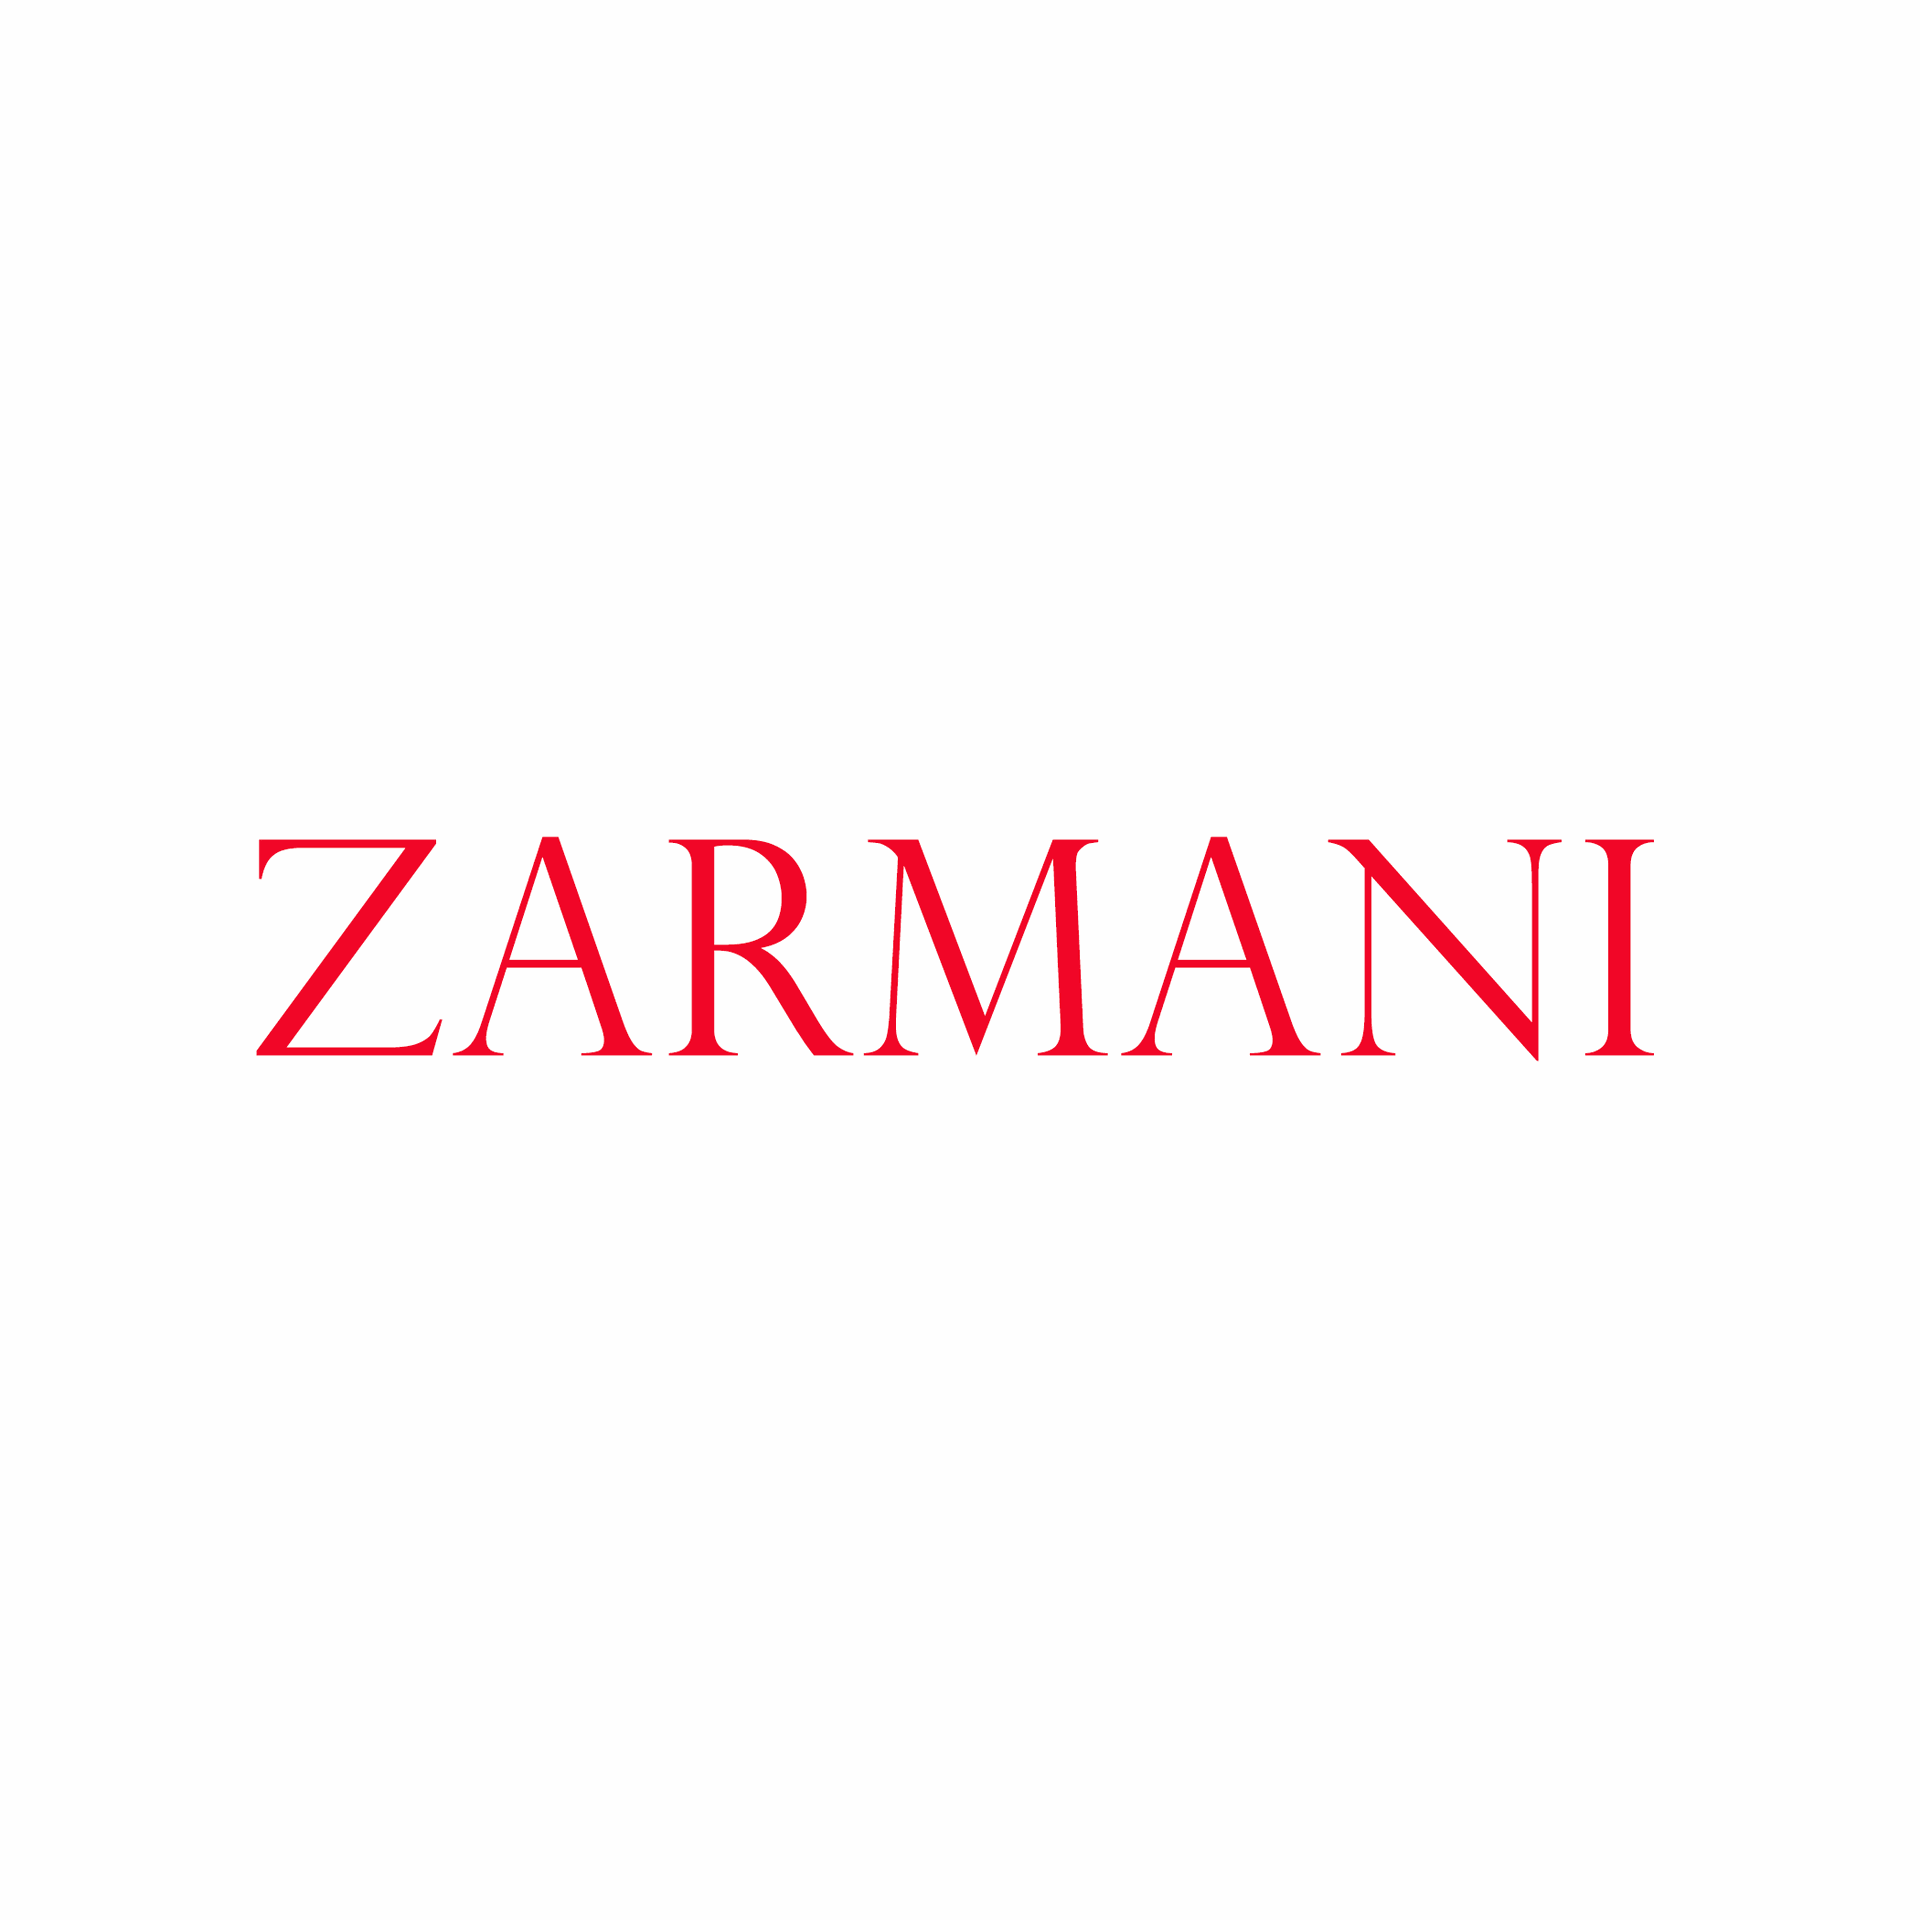 Zarmani